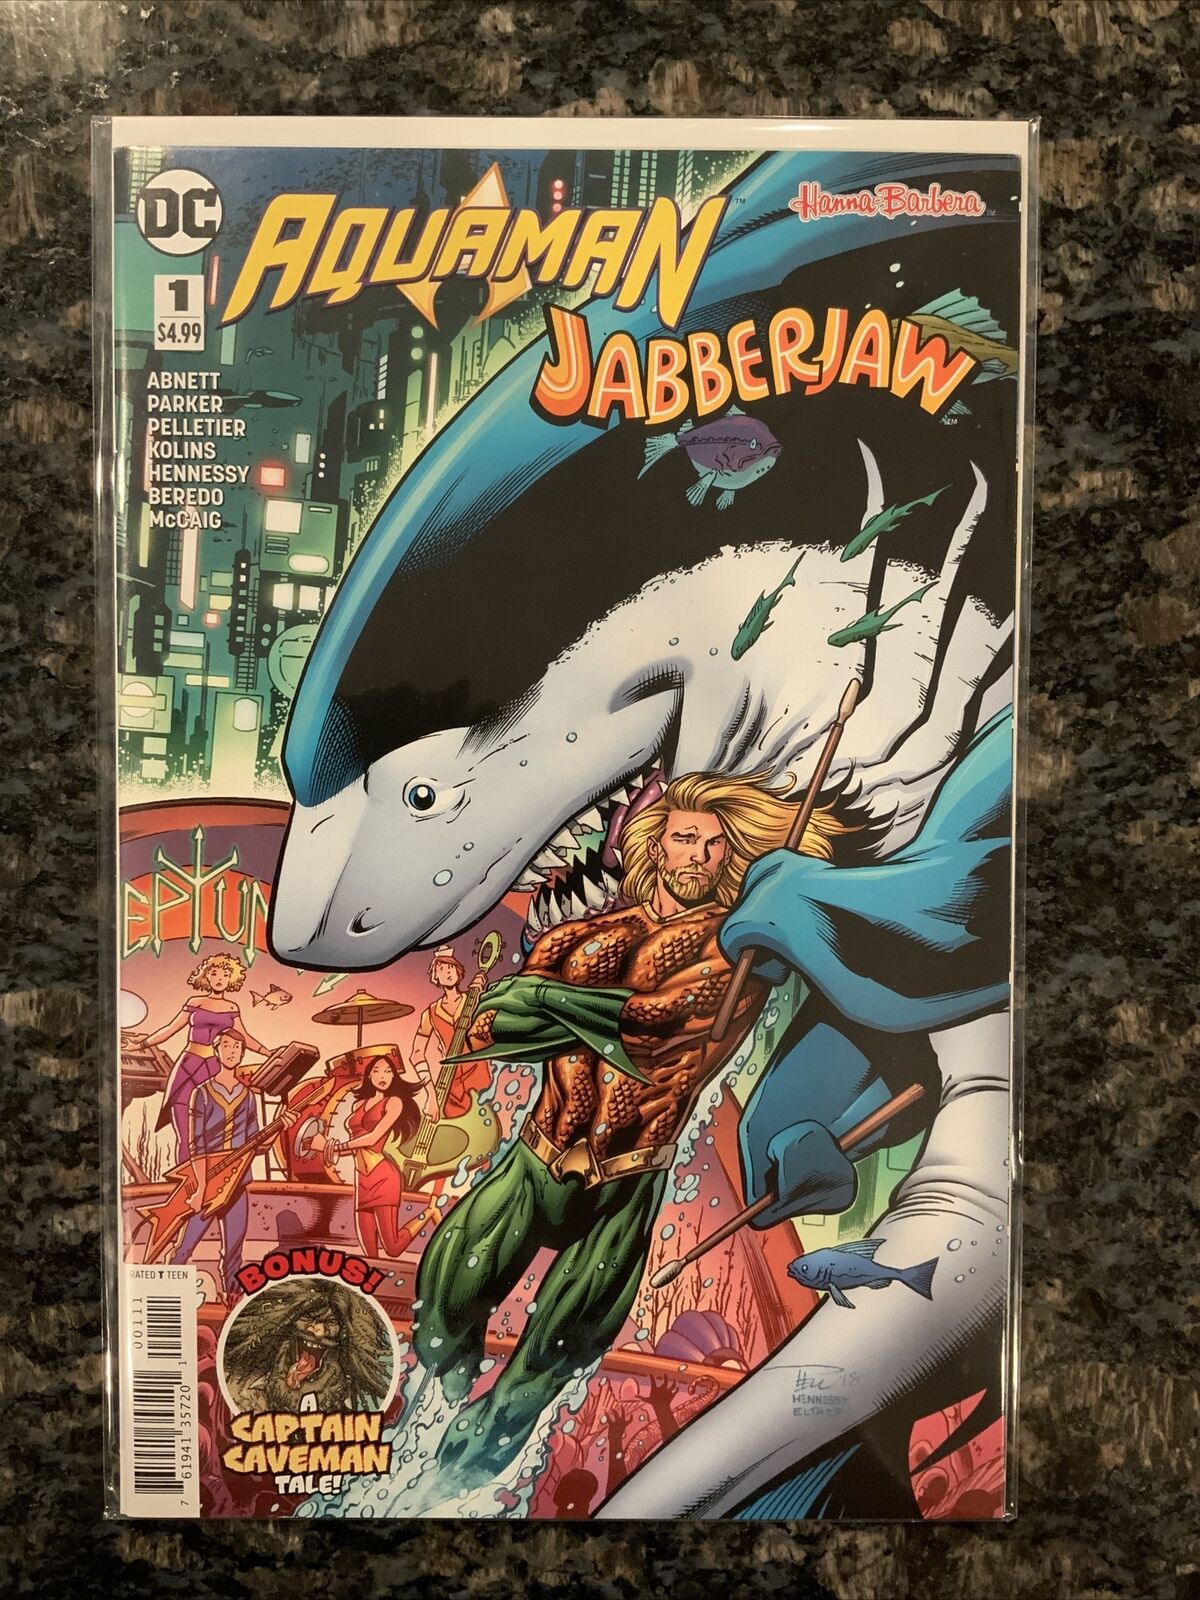 Aquaman Jabberjaw Special #1 Hanna Barbera DC New NM 2018